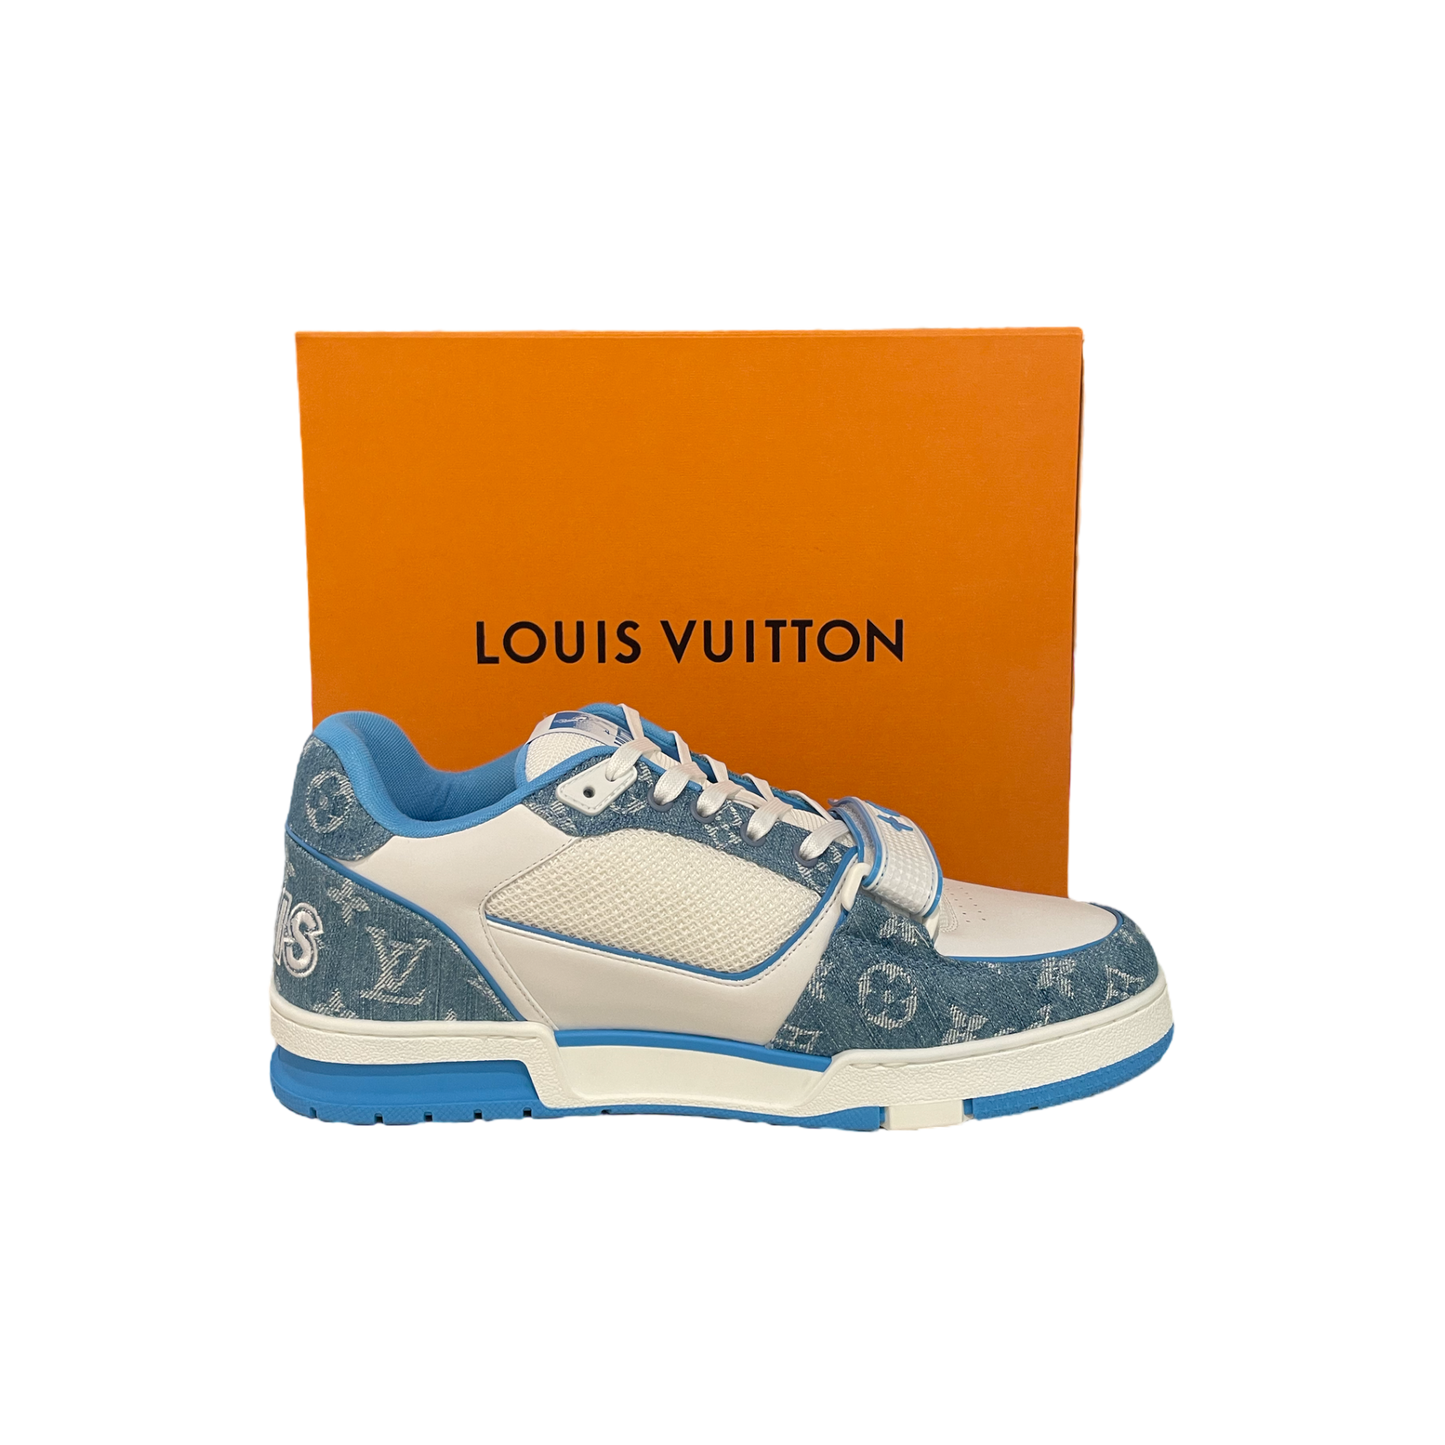 Louis Vuitton Trainer Monogram Denim - Store Exclusive